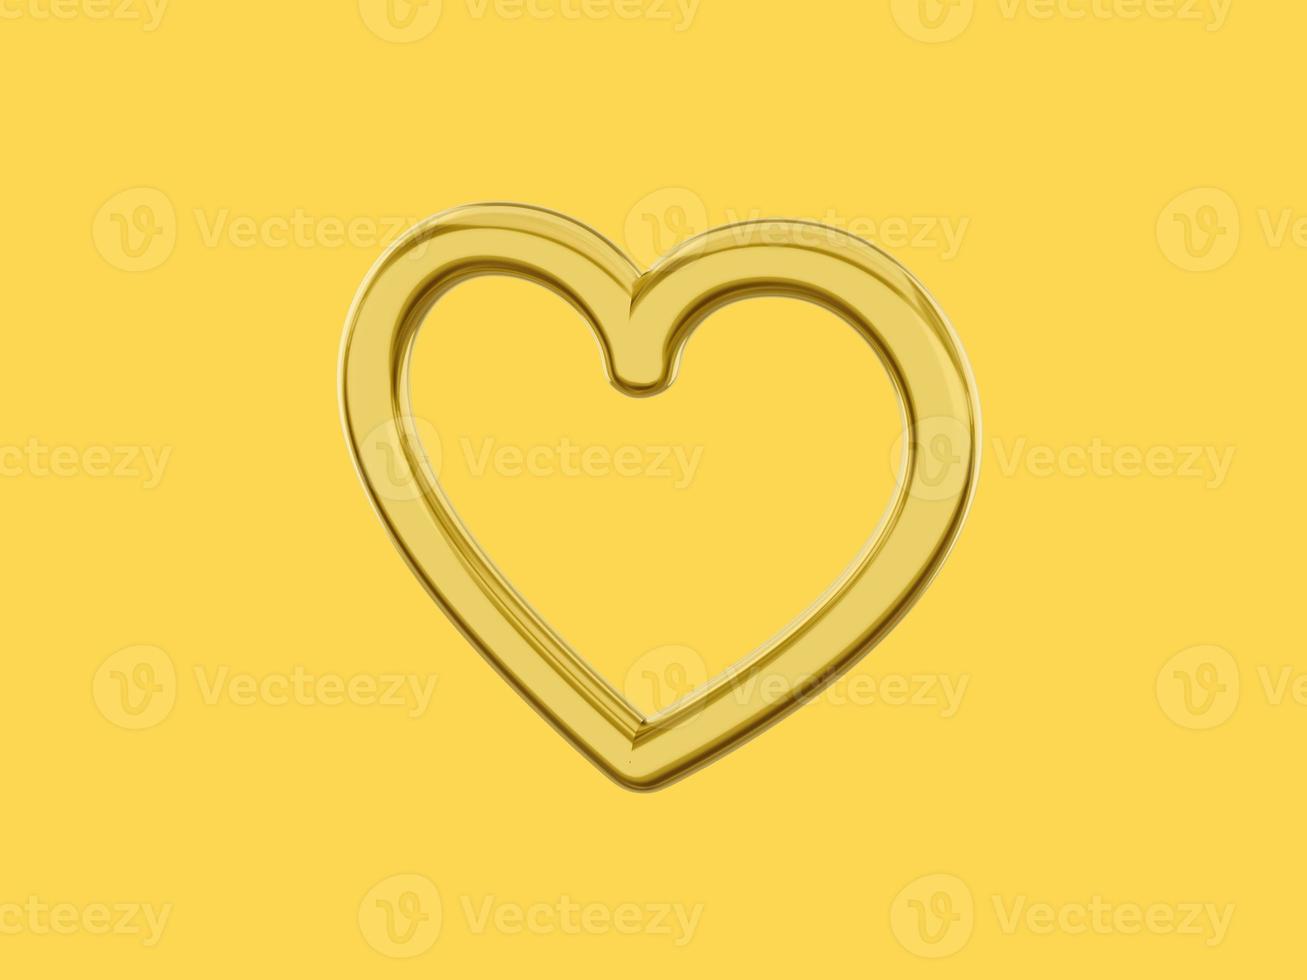 corazón de metal de juguete. color dorado único. símbolo de amor. sobre un fondo amarillo sólido. vista lateral derecha. representación 3d foto